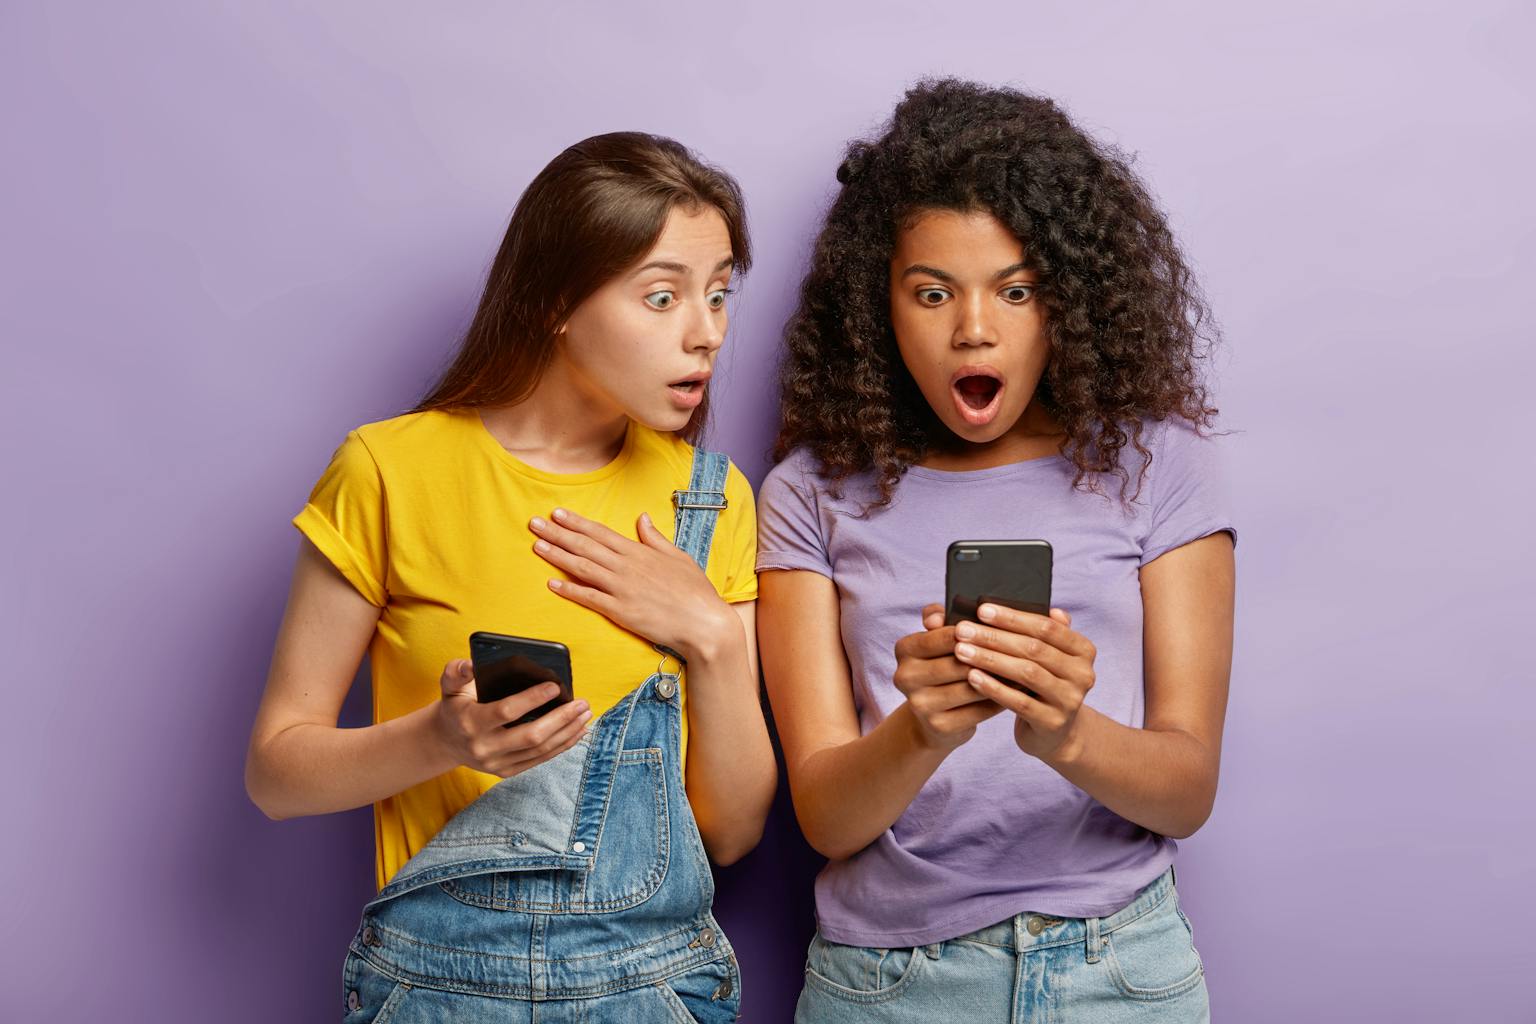 twee jonge vrouwen kijken verbaasd en geshockeerd naar berichten op hun telefoon van social media